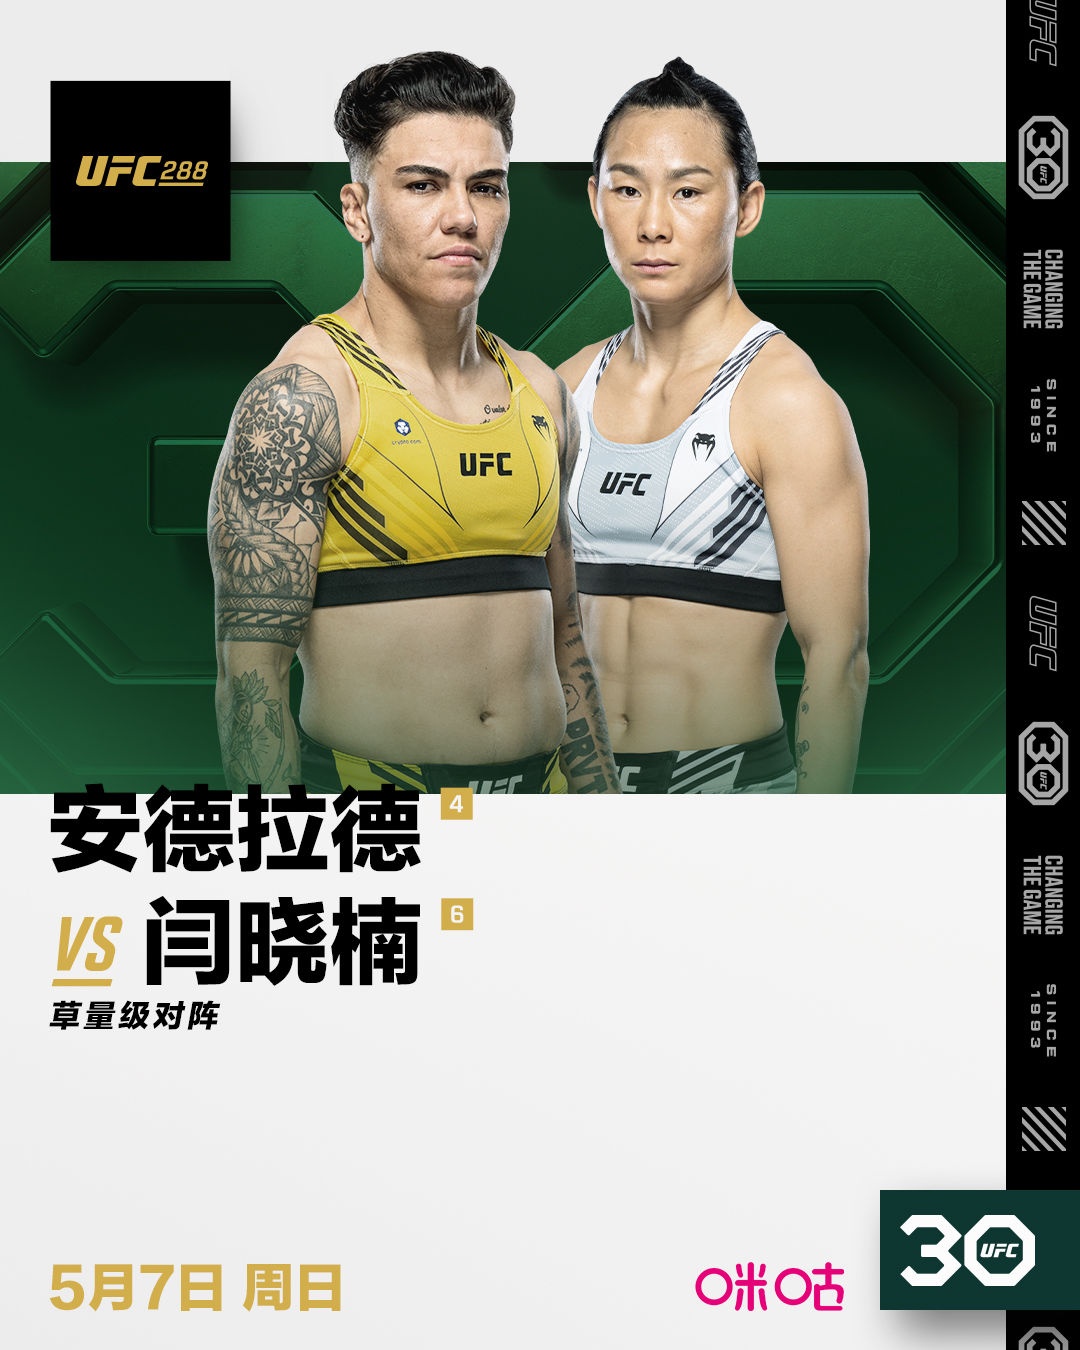 中国选手闫晓楠将出战UFC288